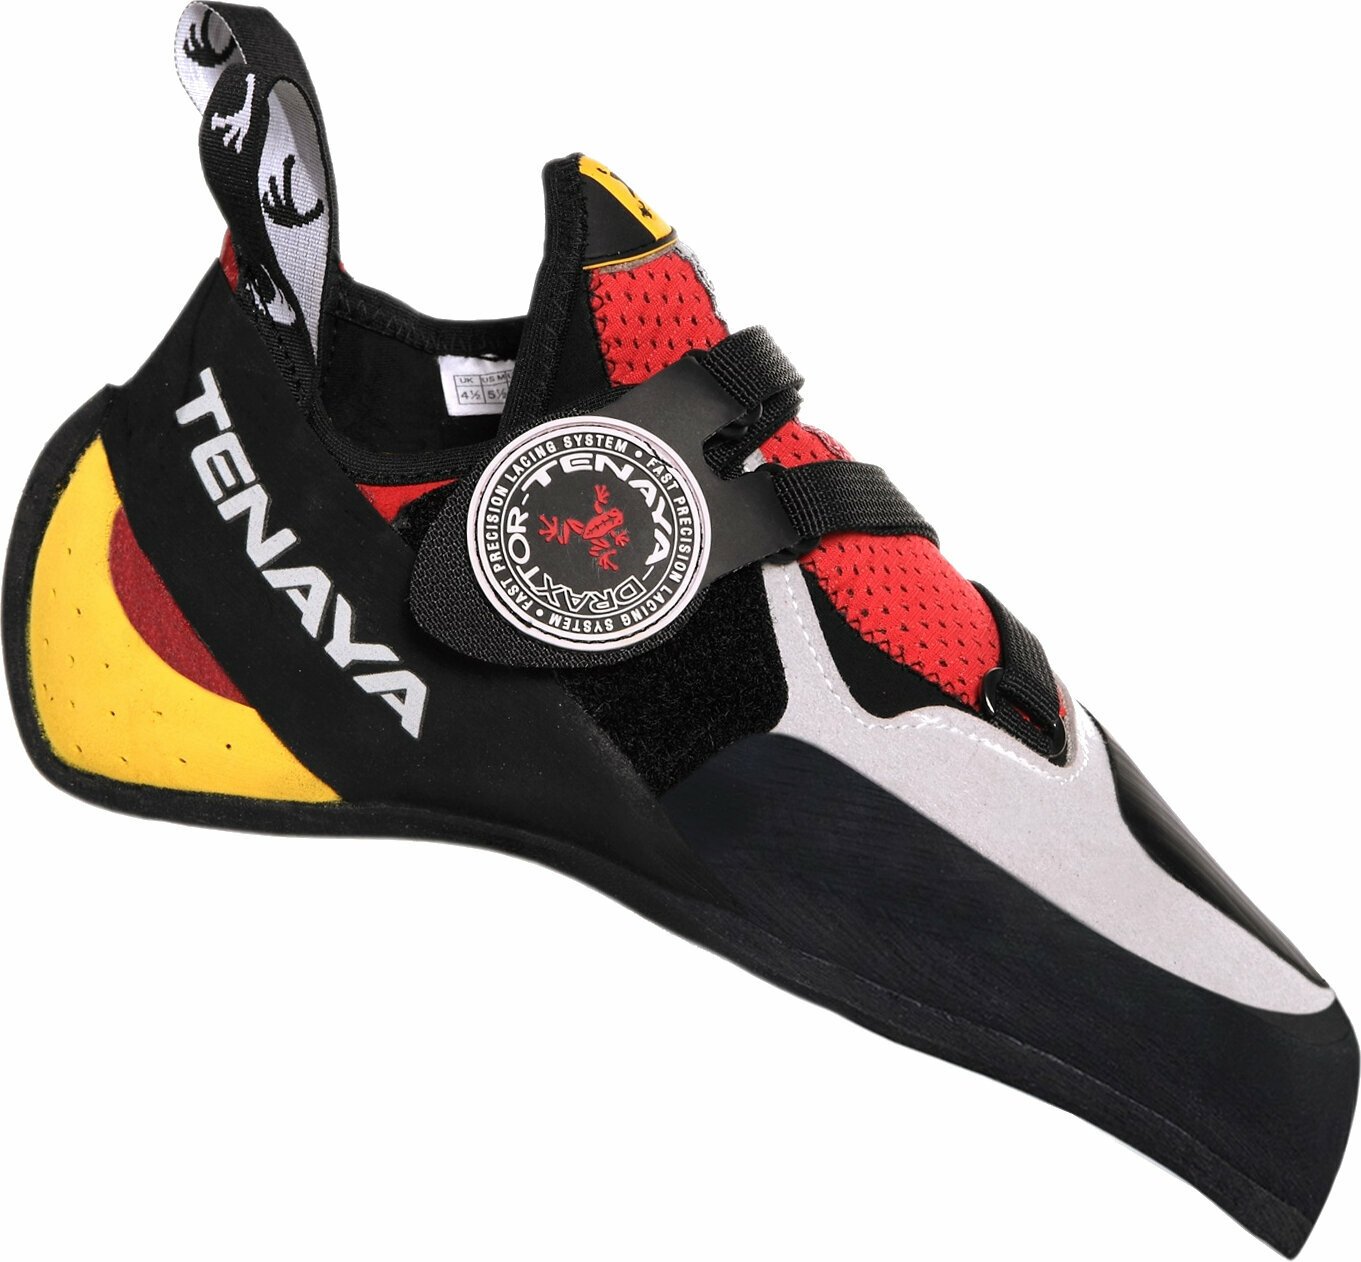 Παπούτσι αναρρίχησης Tenaya Iati Κόκκινο ( παραλλαγή ) 41,3 Παπούτσι αναρρίχησης